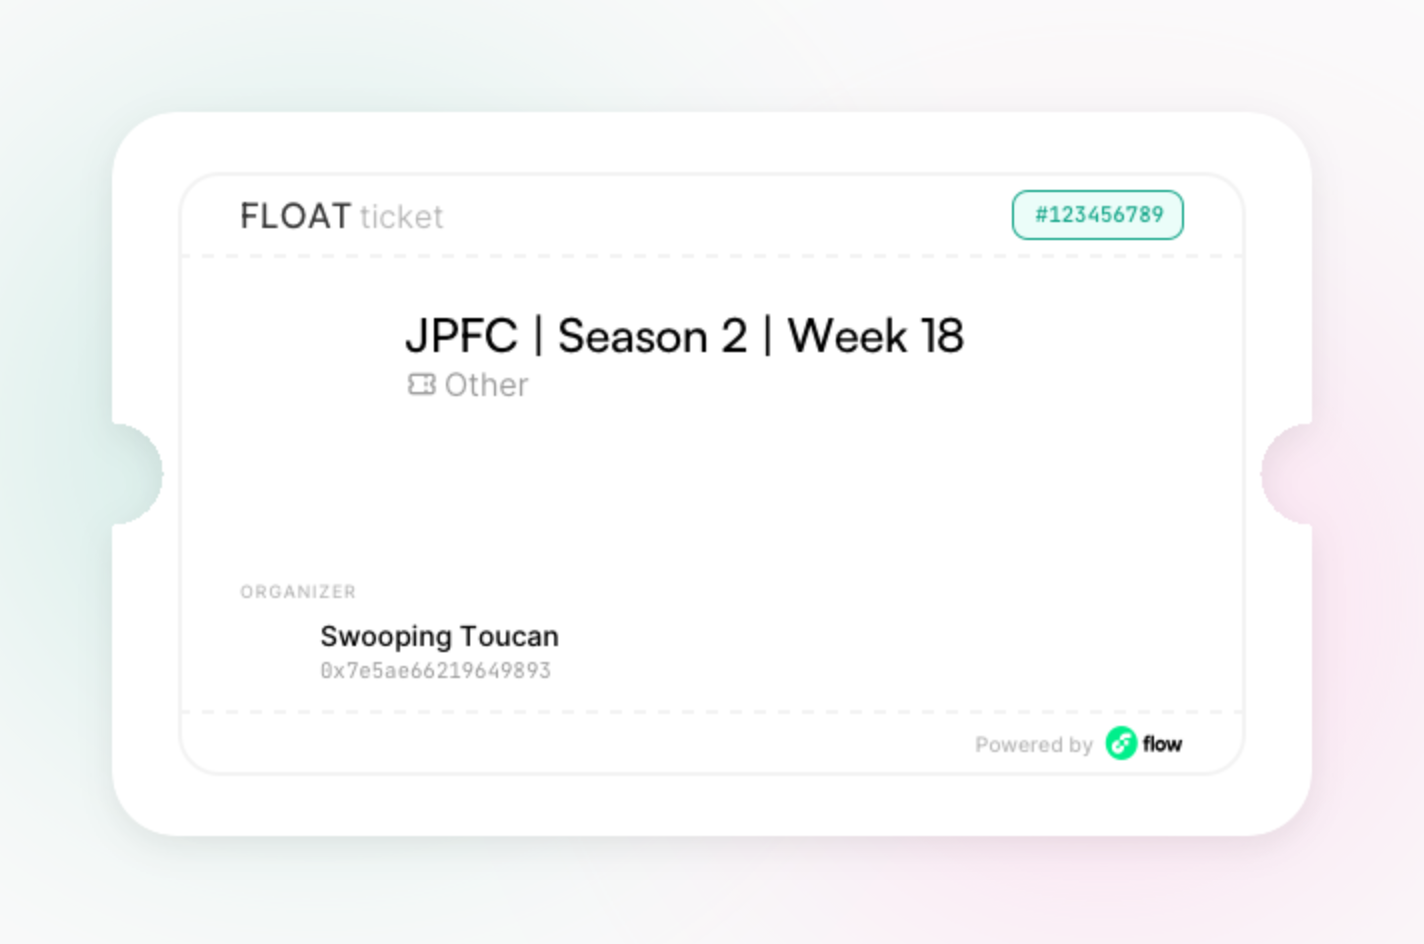 JPFC | Season 2 | Week 18 asset